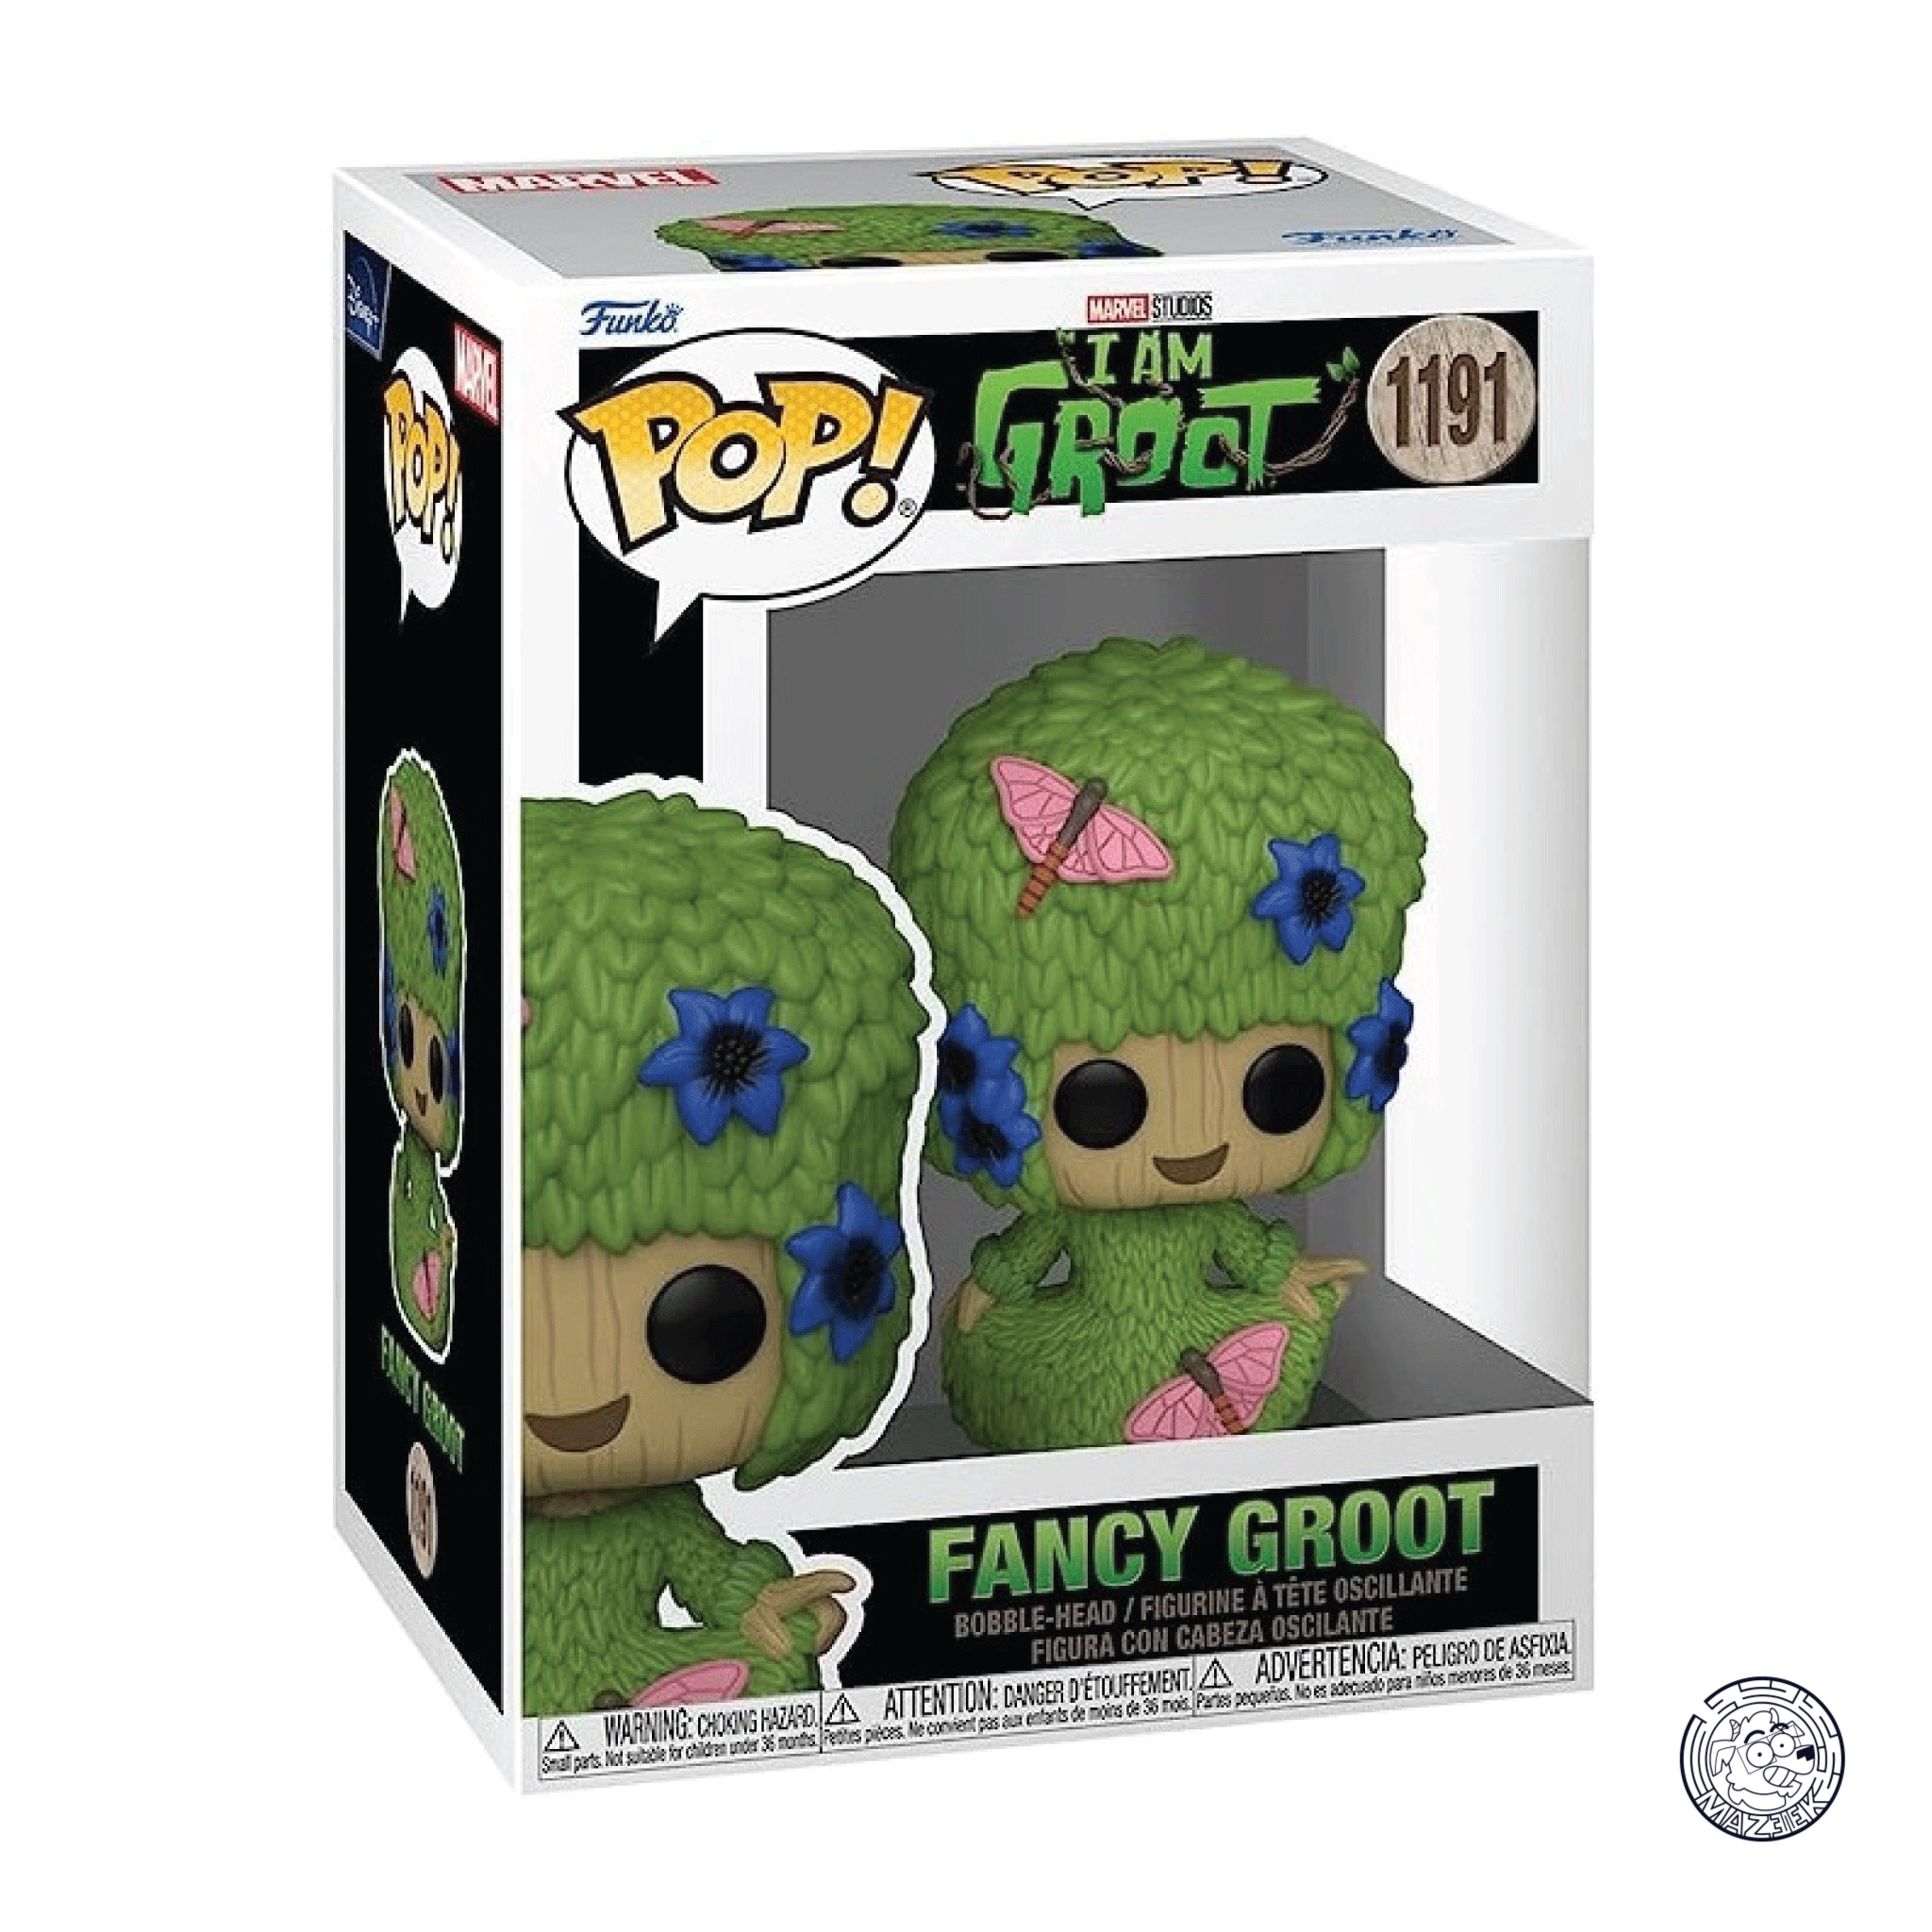 Funko POP! I Am Groot: Fancy Groot 1191